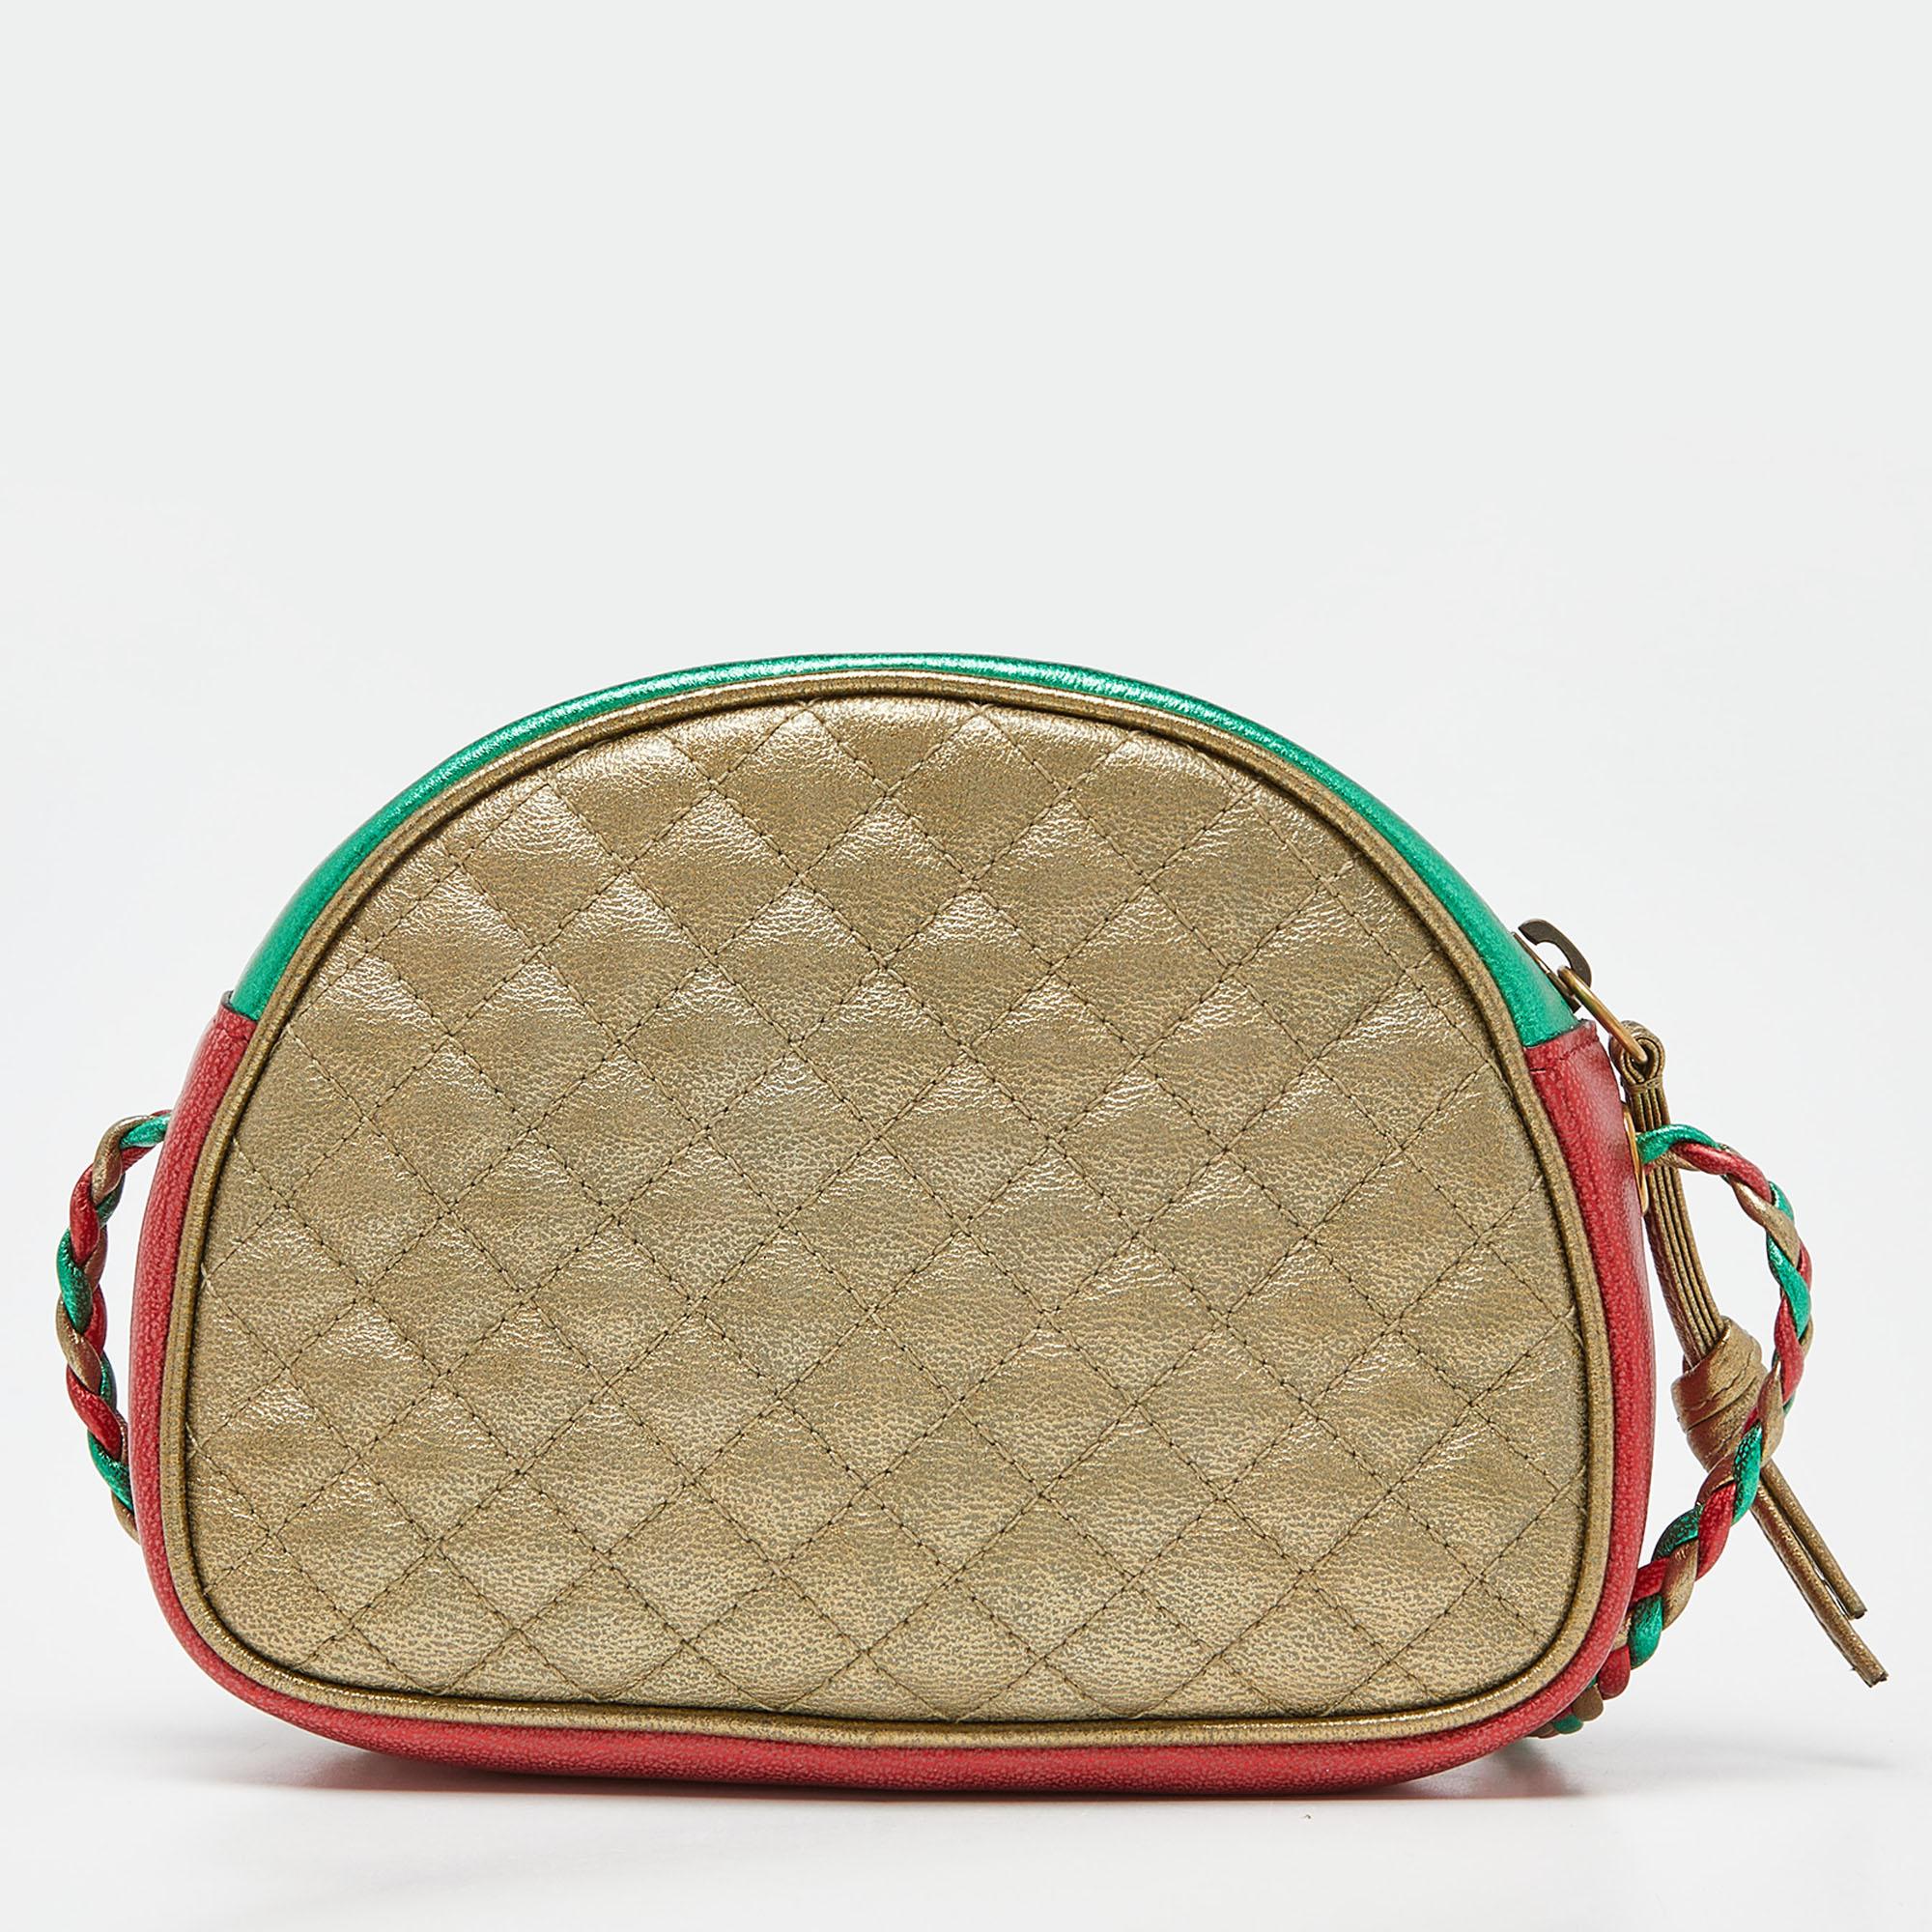 Diese Mini-Trapuntata Crossbody Bag von Gucci ist eine großartige Option, um Ihre Essentials zu transportieren. Diese gesteppte Ledertasche hat ein kompaktes Format mit einem Signaturmotiv auf der Vorderseite und einem Reißverschluss, um das